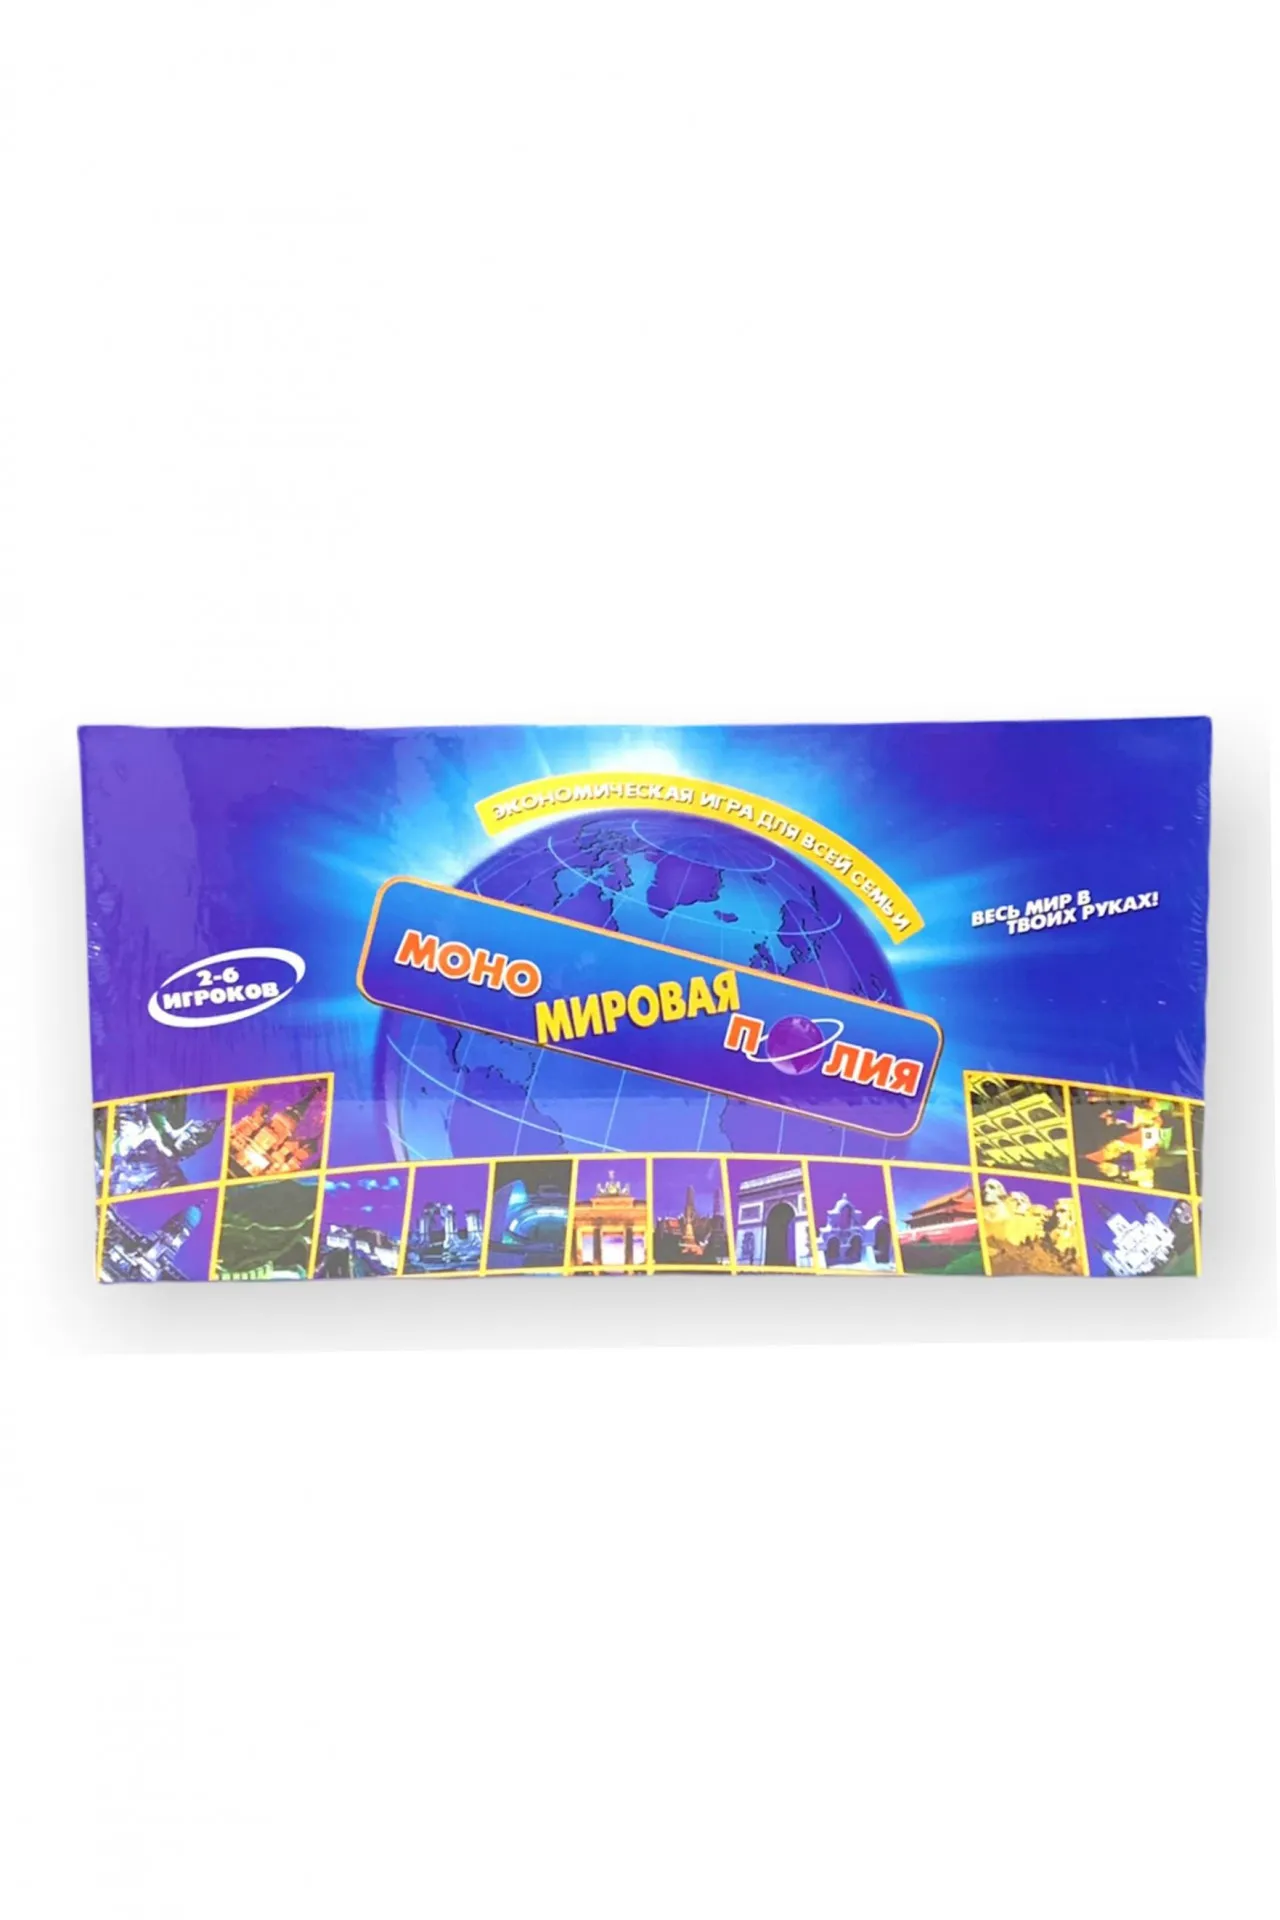 Экономическая настольная игра "Монополия", для детей и взрослых d009 SHK Toys#1